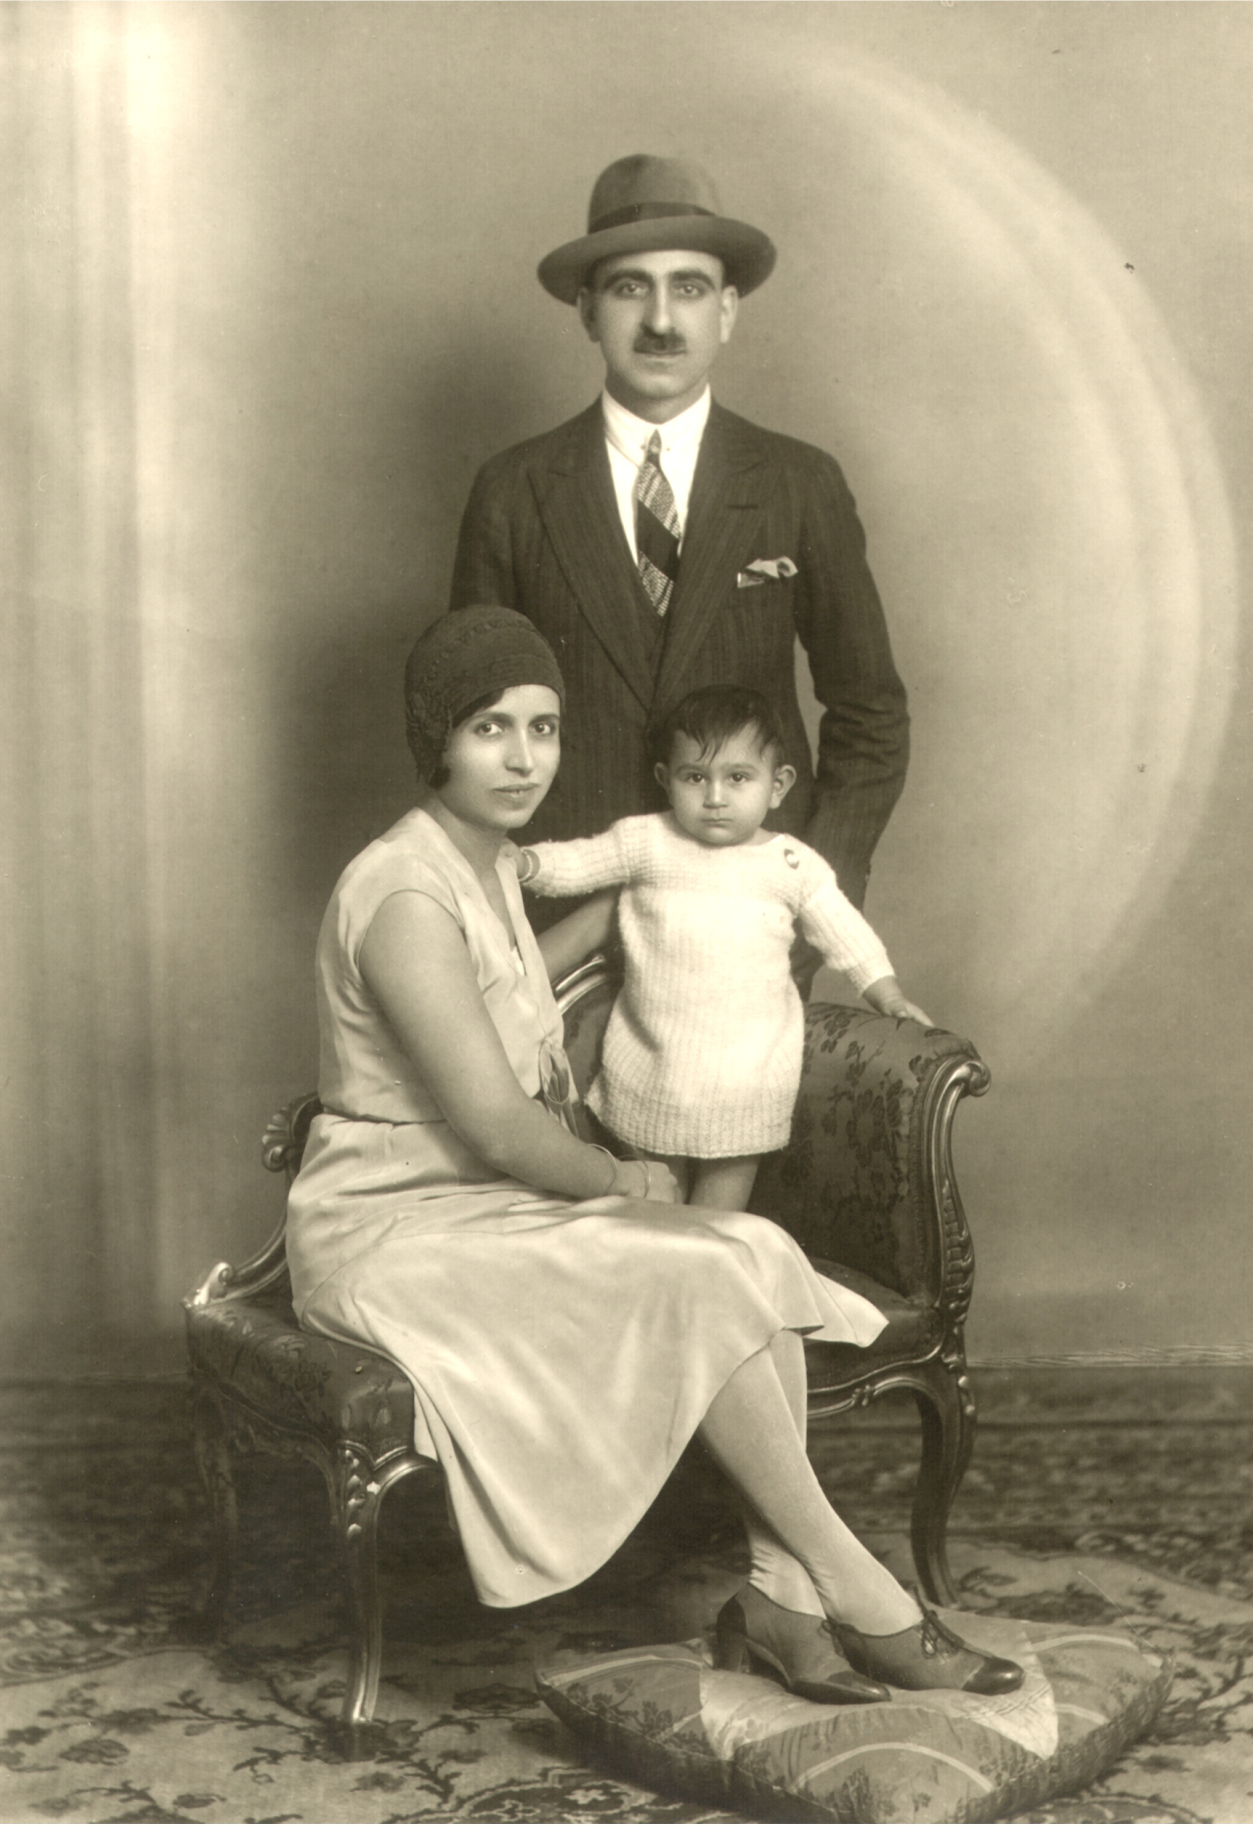 Տէր եւ Տիկին Յակոբ եւ Արշալոյս Մոզեան (ծնեալ Պալըգճեան), իրենց որդին՝ Թօրոս, Կահիրէ, 1927-1931 թ.։